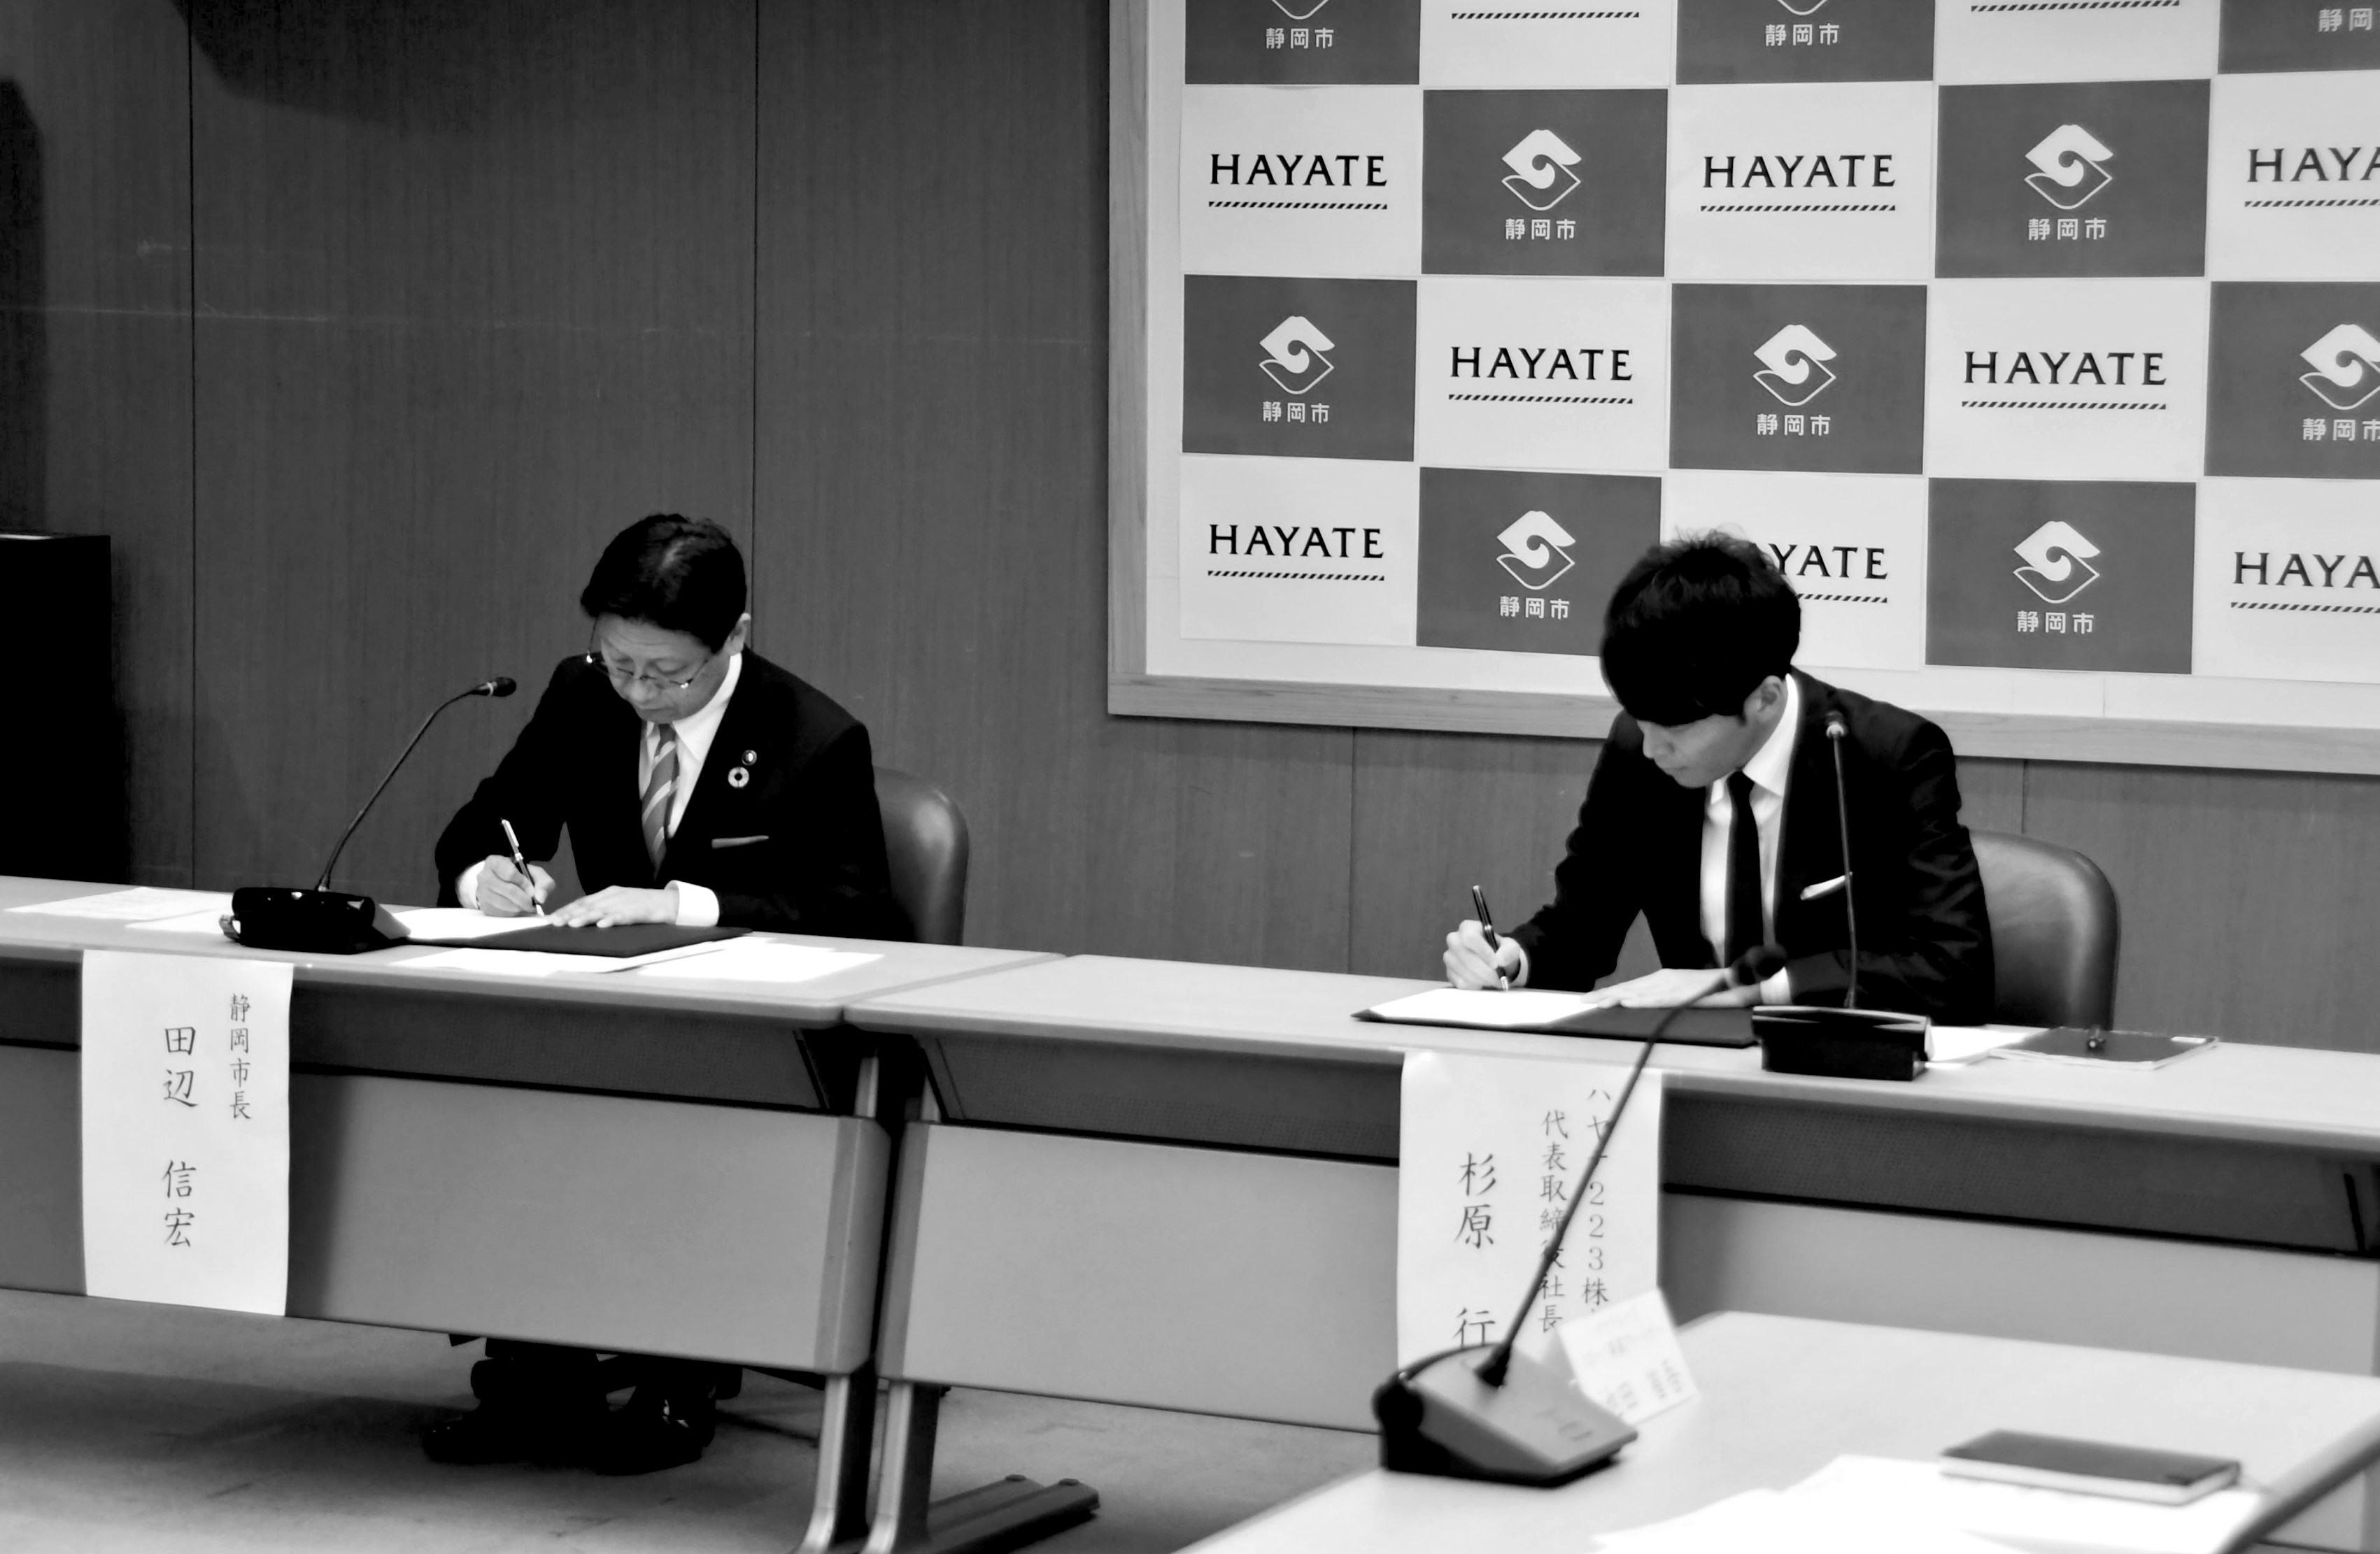 ハヤテ223株式会社 静岡市 包括連携協定